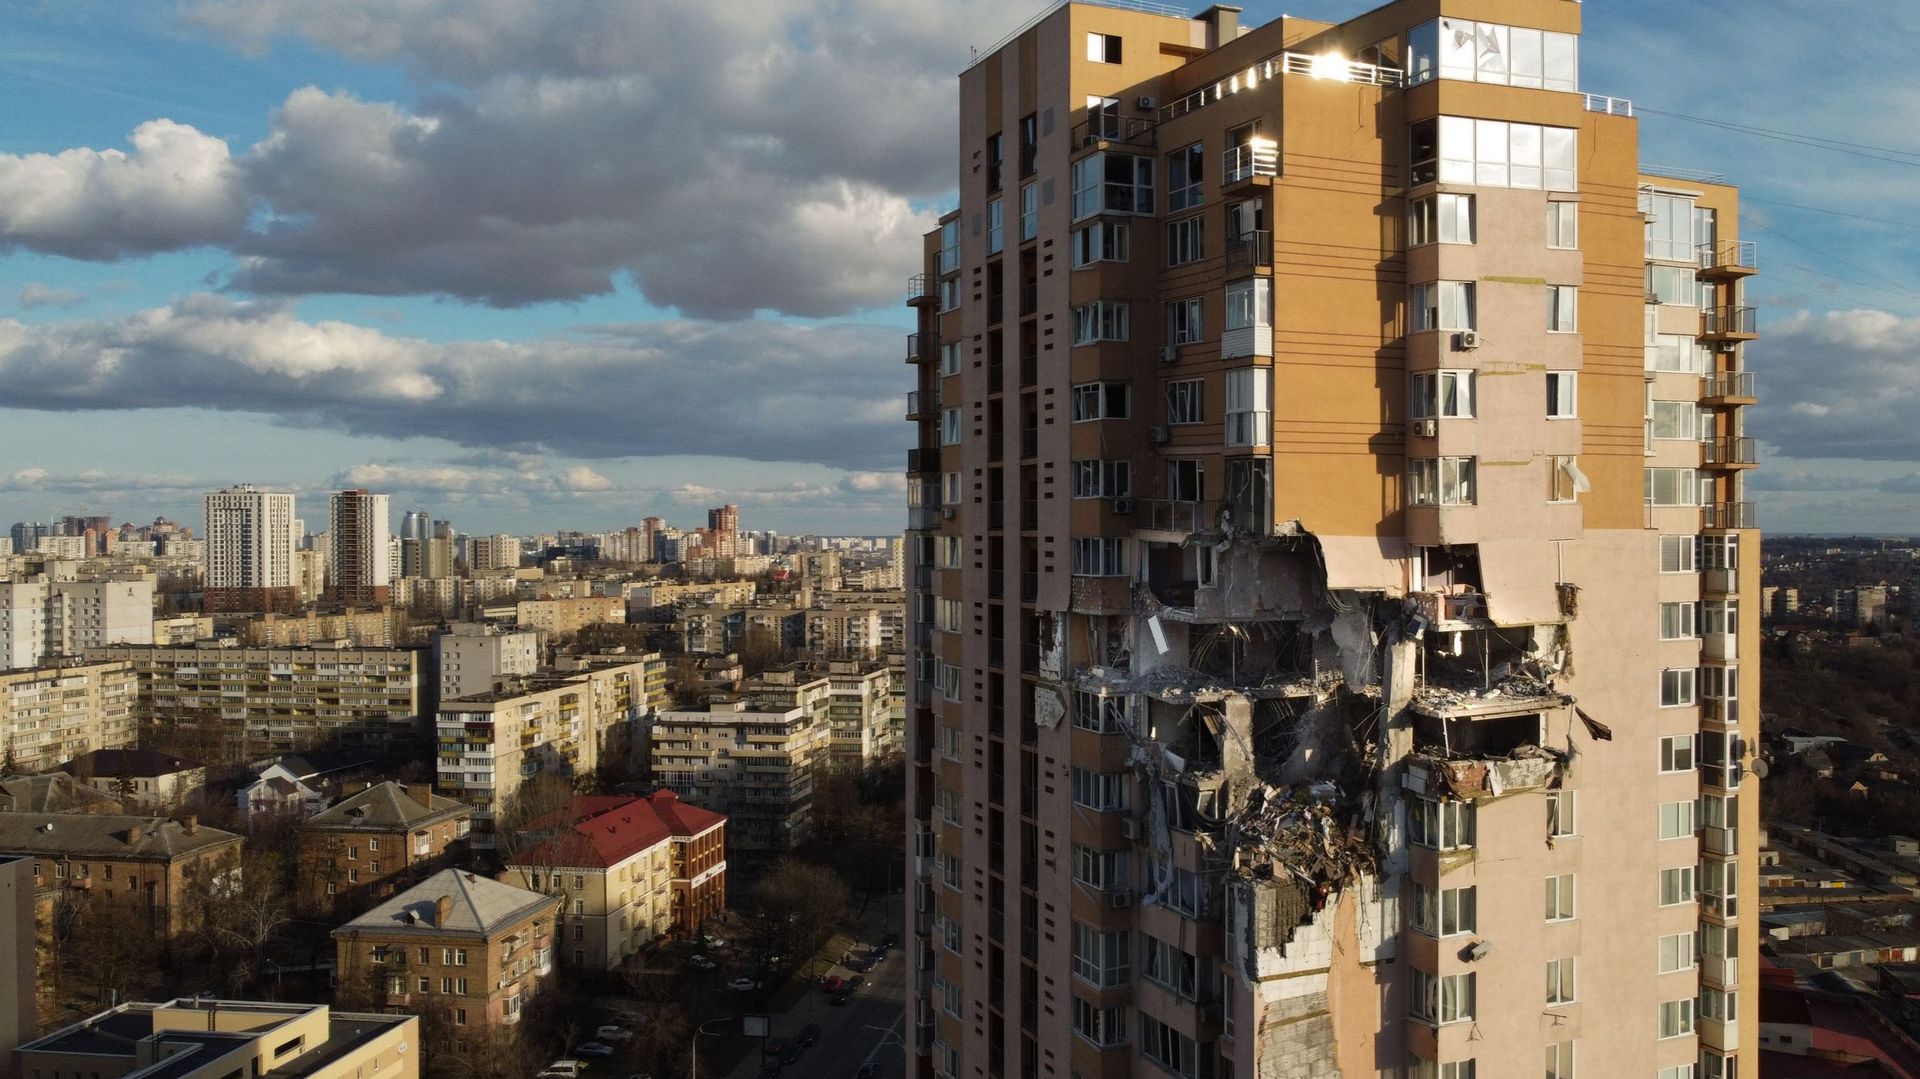 Des bombardements ont lieu dans plusieurs villes du pays dont la capitale, Kiev.